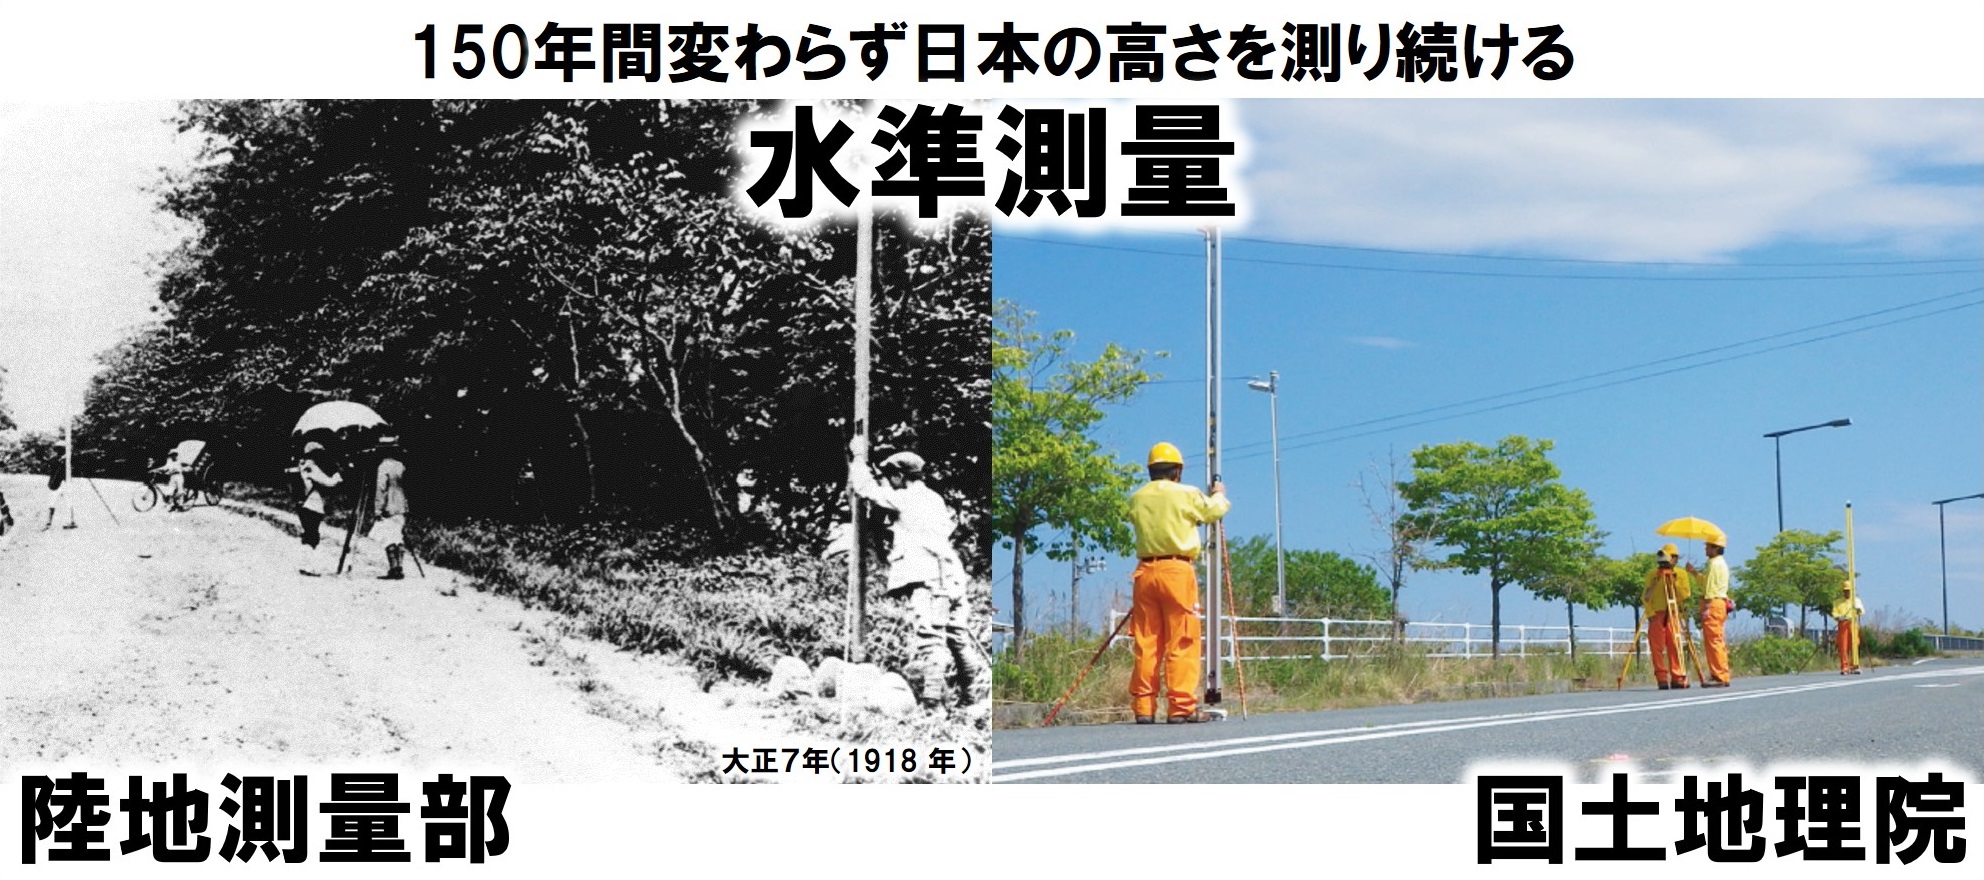 長い物差しを支えている人と望遠鏡を覗いている人が写っている写真が2枚あります。左側は大正7年、右側は最近の写真で、150年間変わらない方法で日本の高さを測り続けています。